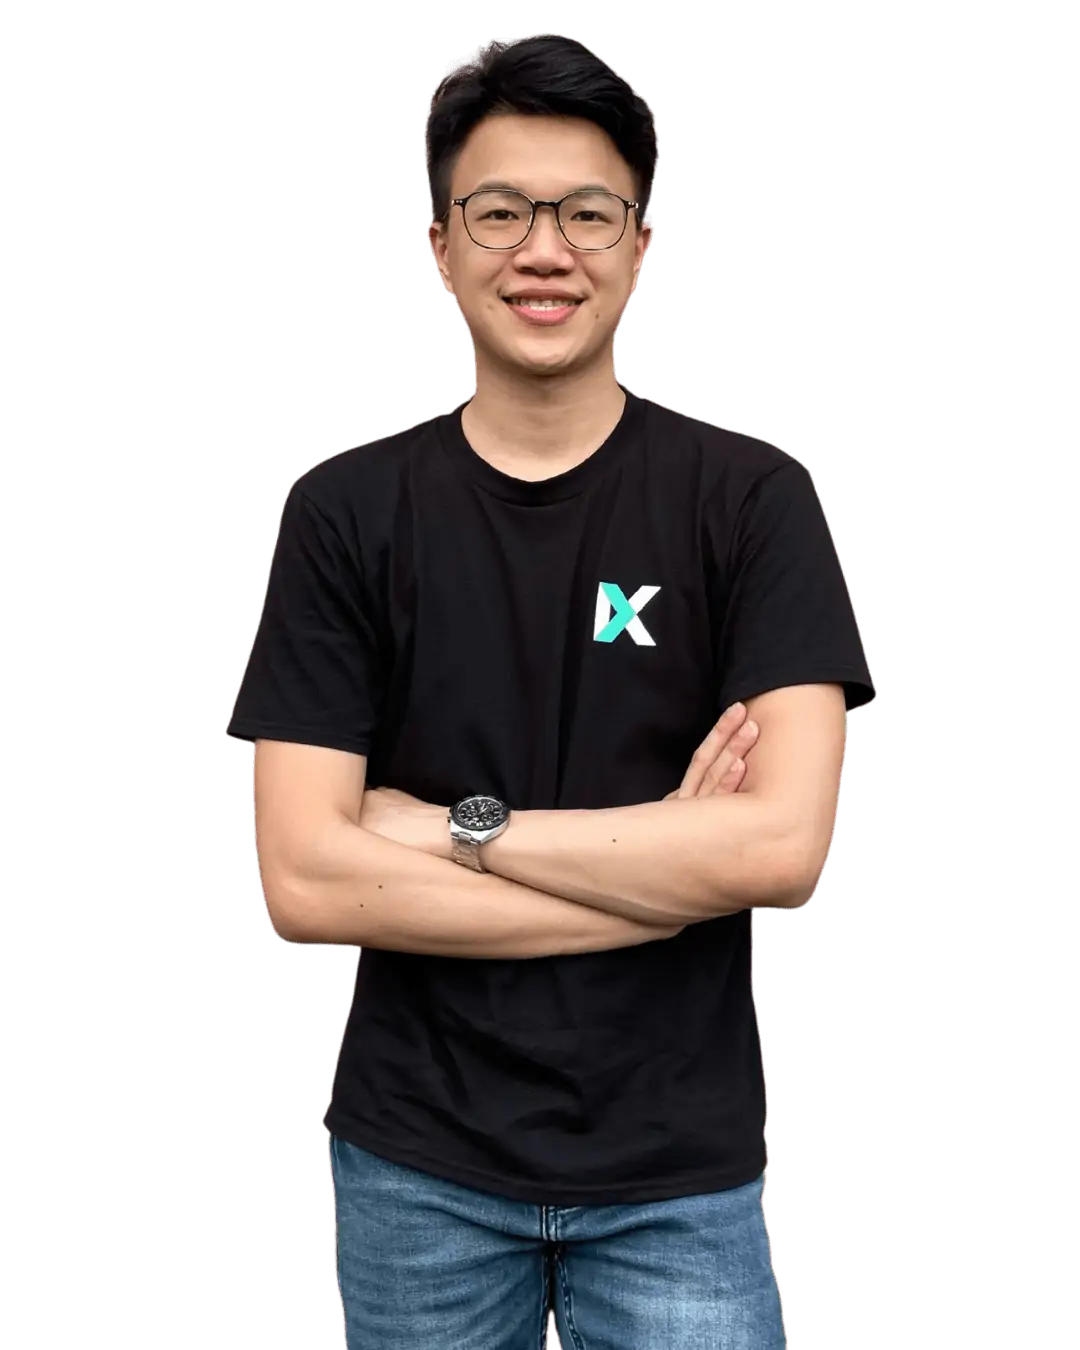 kang xiang digital marketing founder